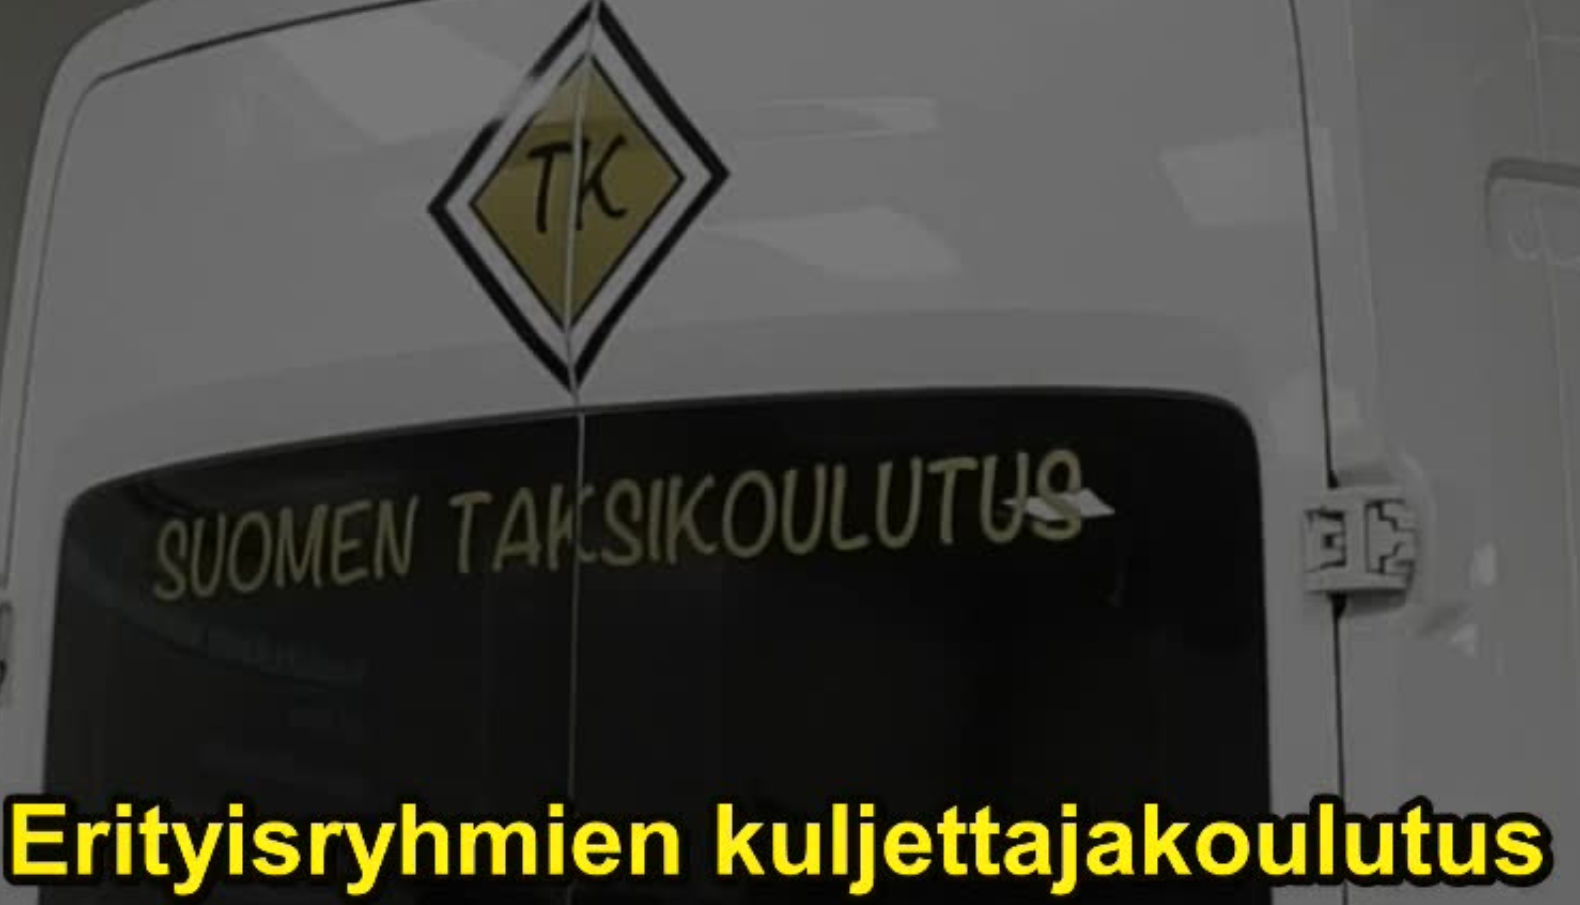 Suomen Taksikoulutus Oy, erityisryhmien kuljettajakoulutus.